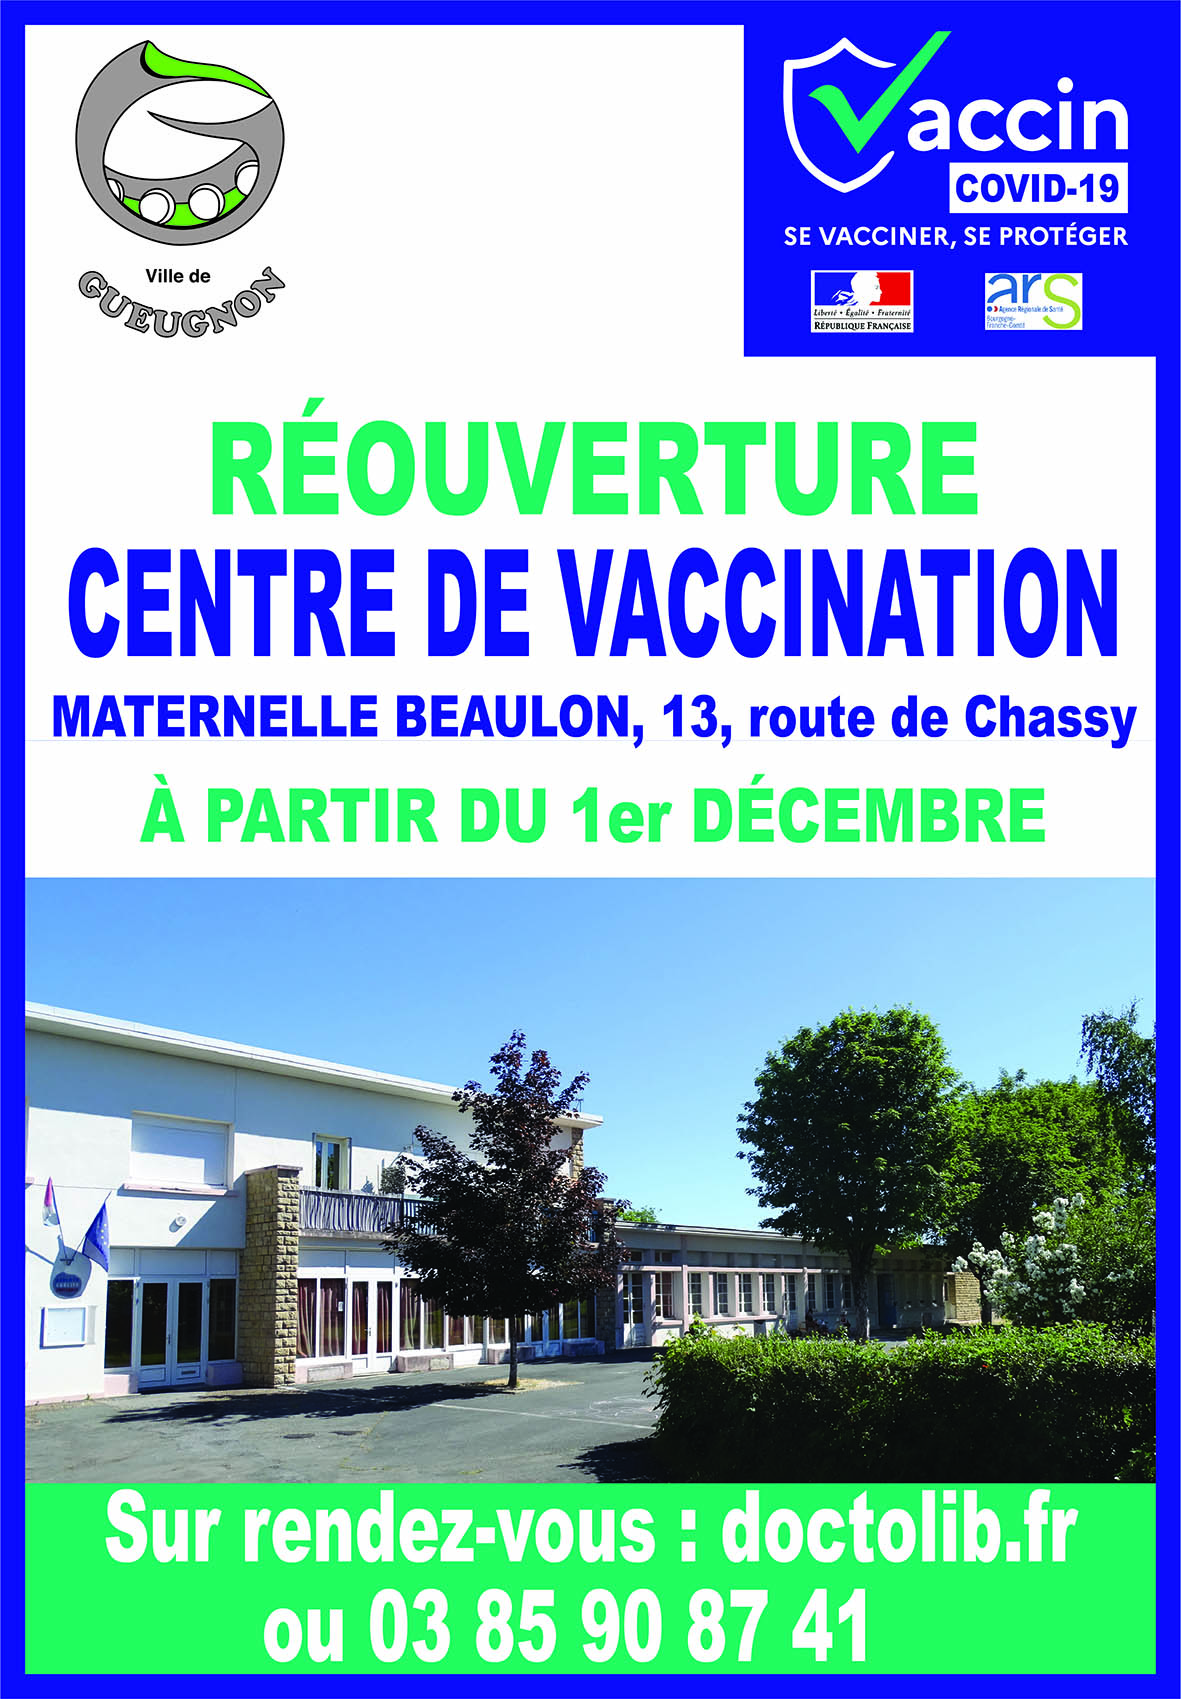 Réouverture du centre de vaccination le 1er décembre.